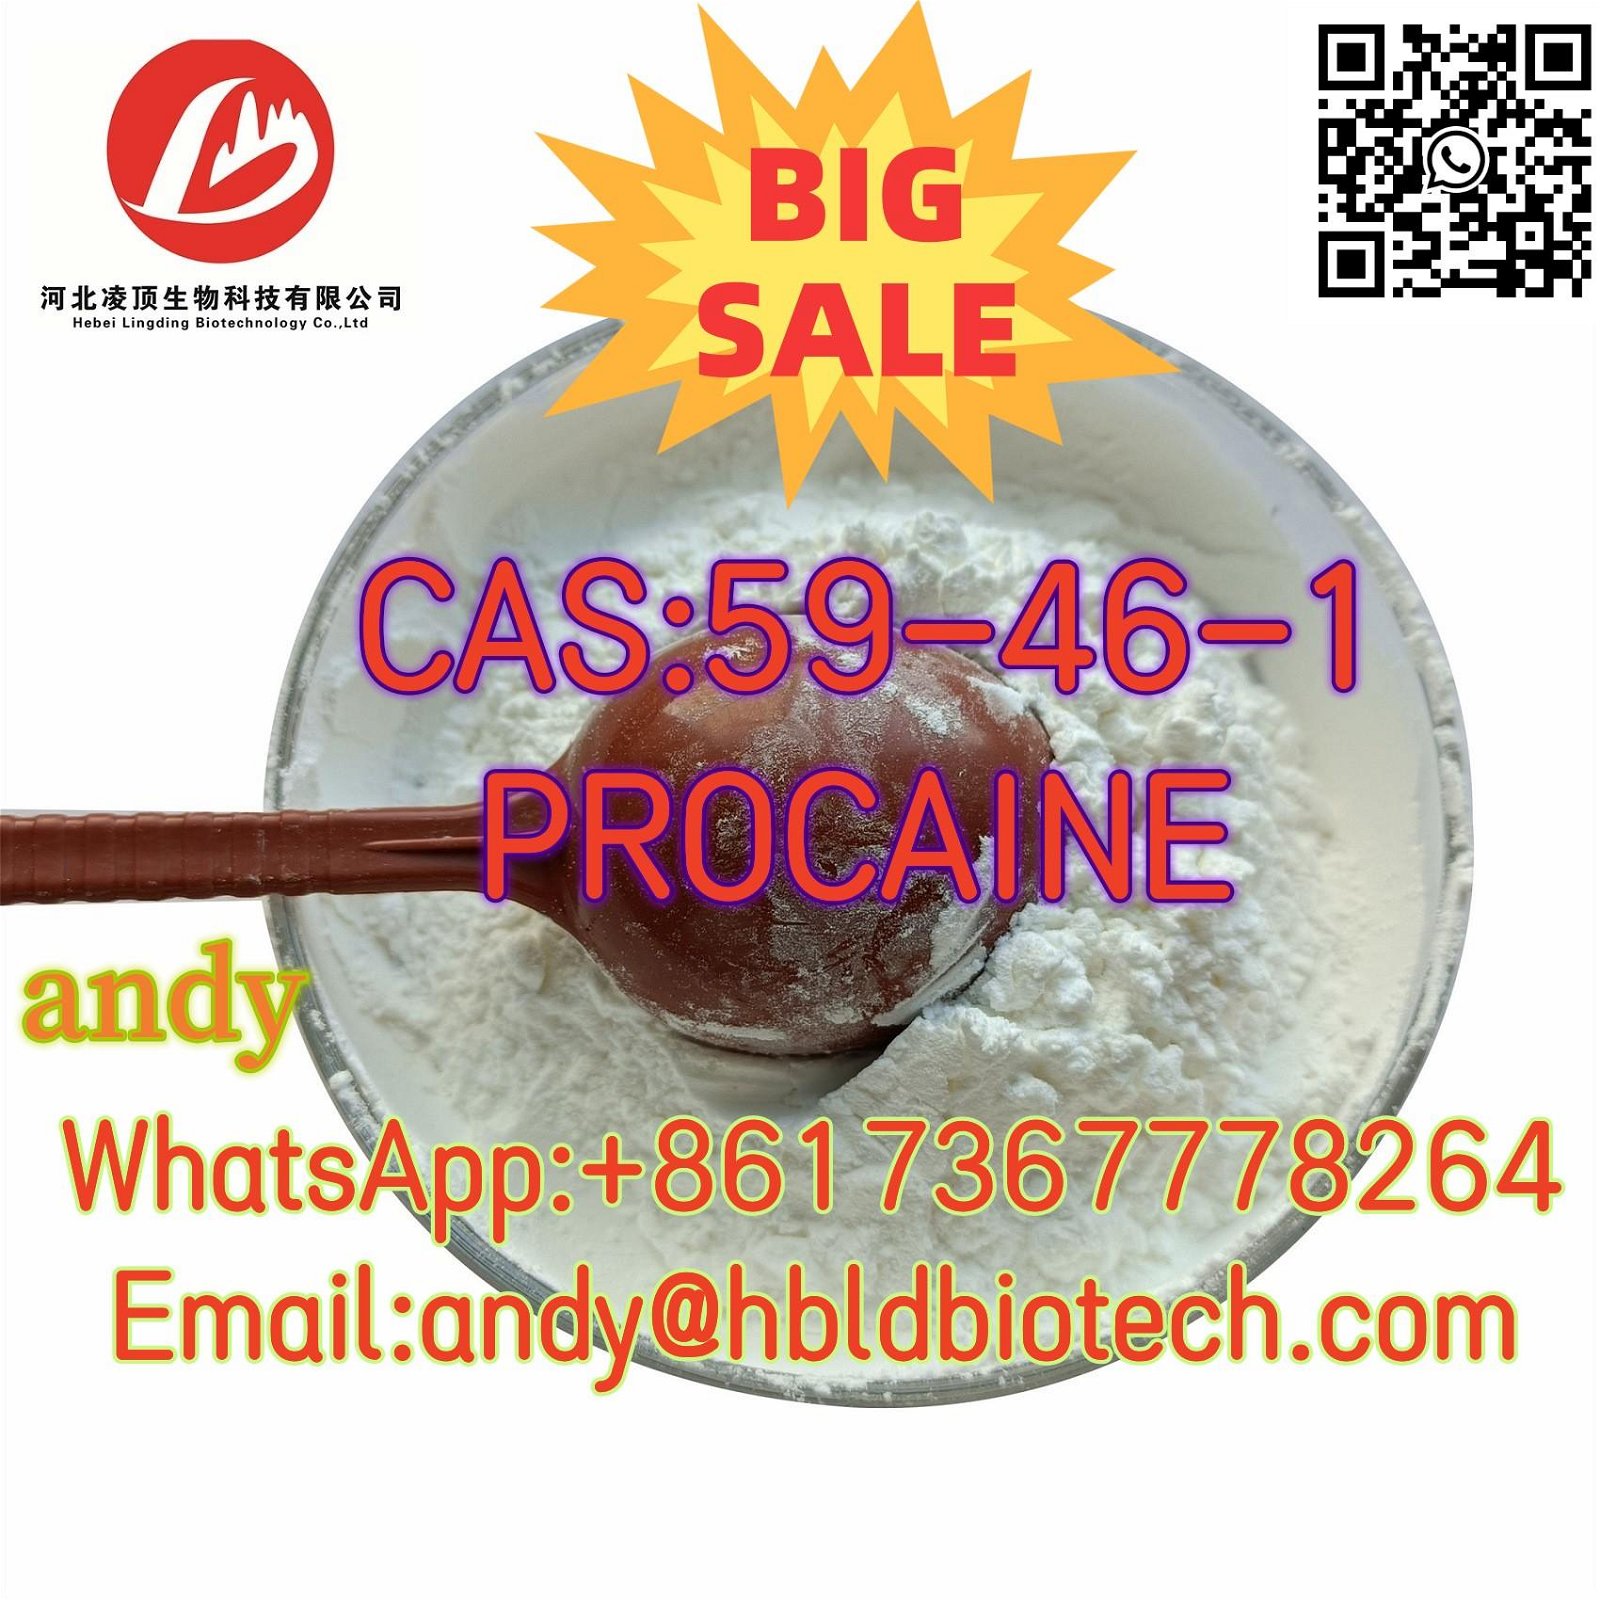 CAS:59-46-1; High quality PROCAINE powder for local anaesthesia surgery